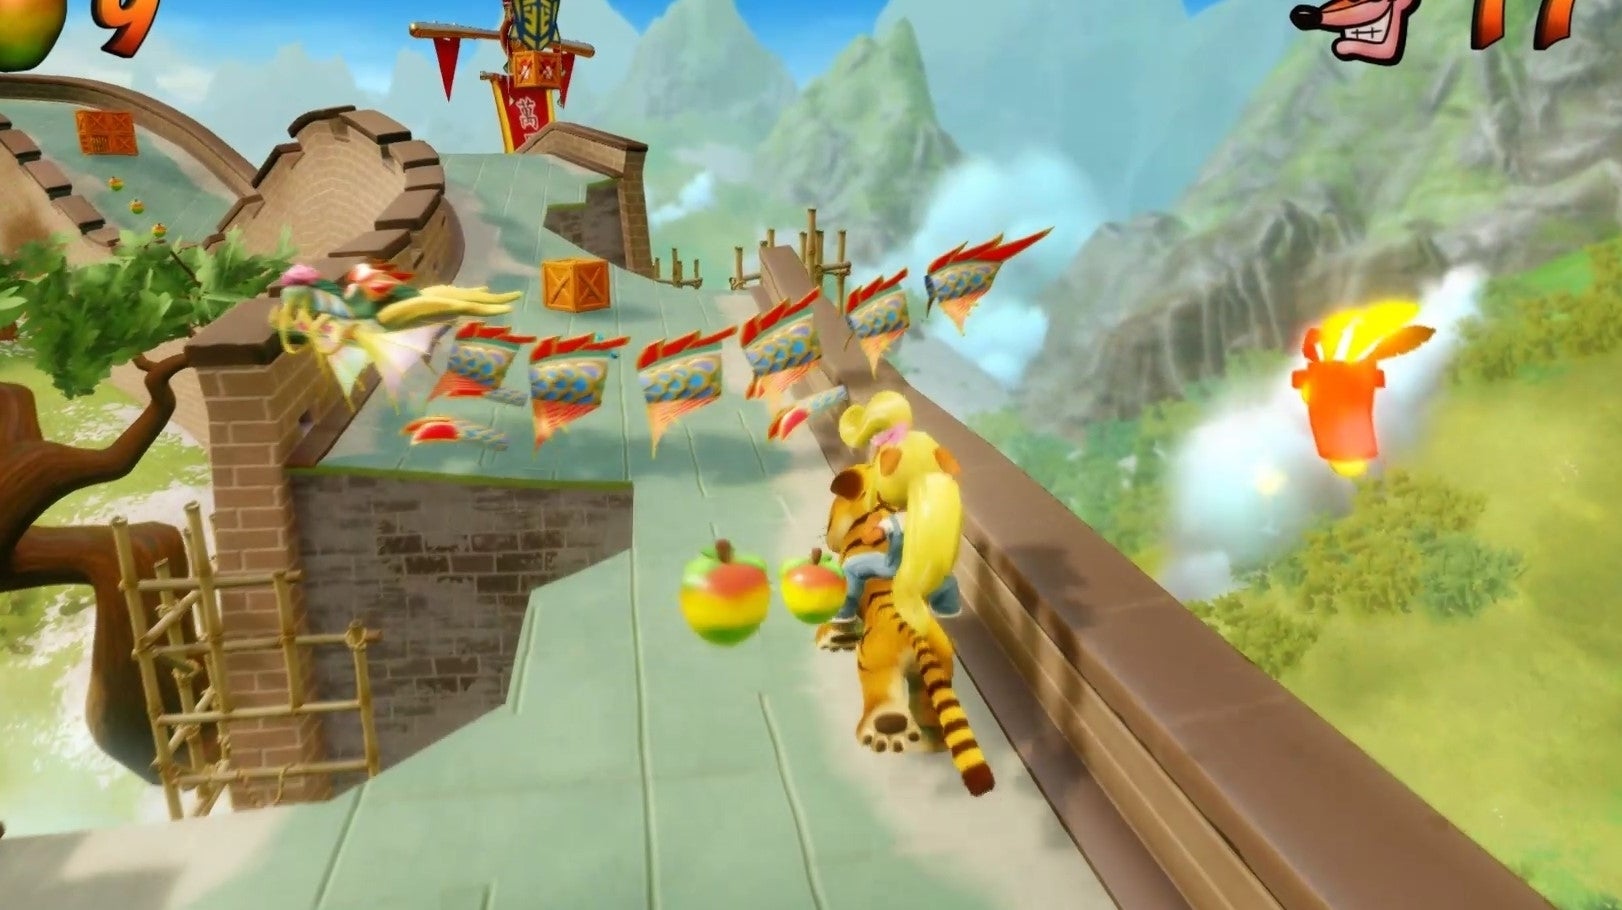 Immagine di Crash e Spyro tra i giochi di un Humble Bundle davvero sorprendente